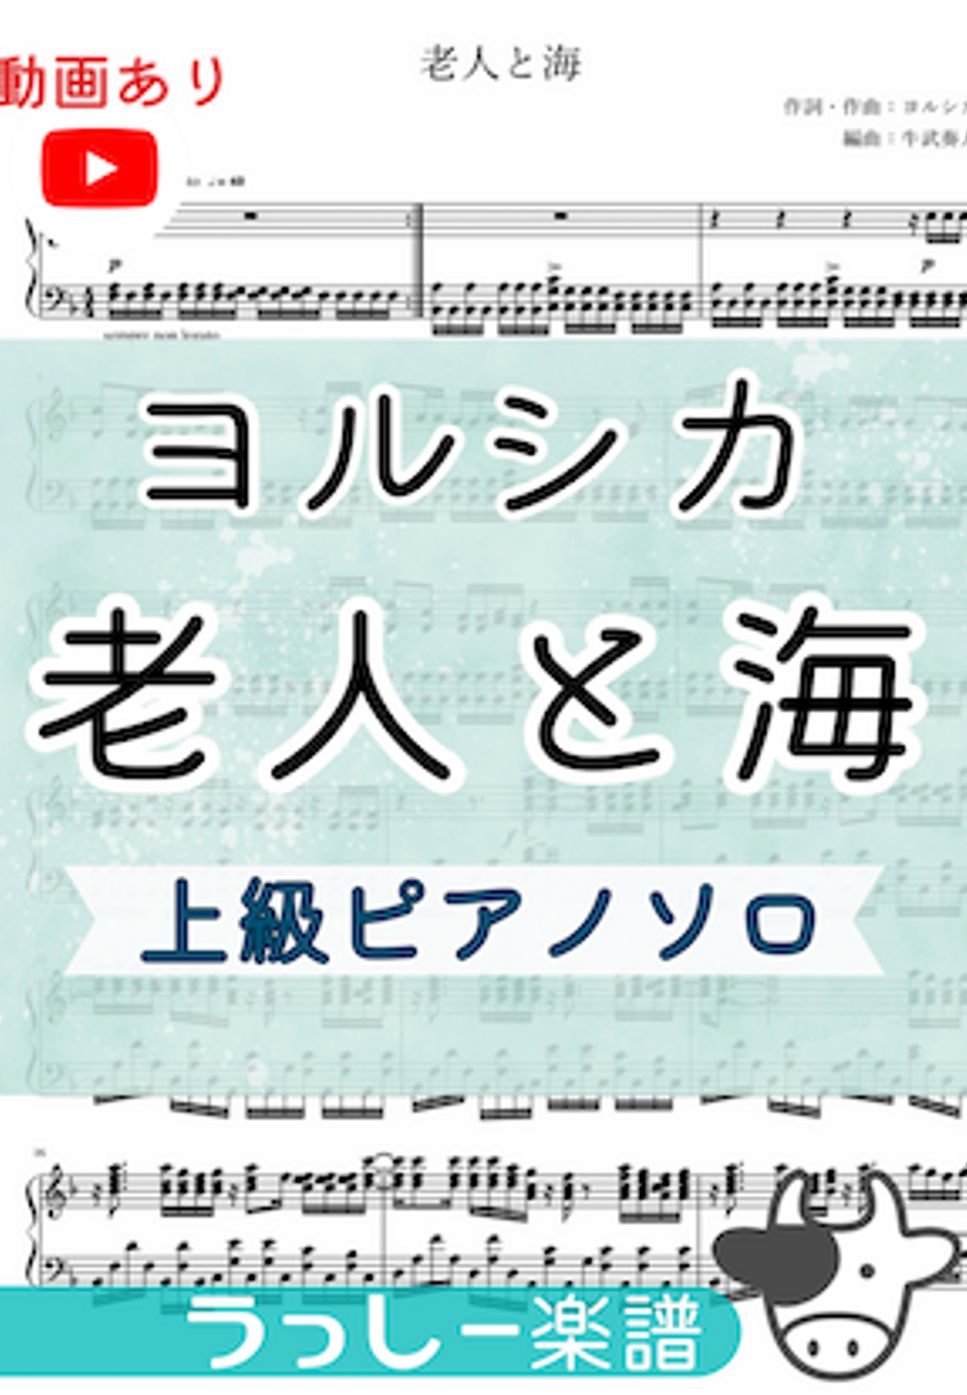 ヨルシカ - 老人と海 (上級ピアノソロ) by 牛武奏人